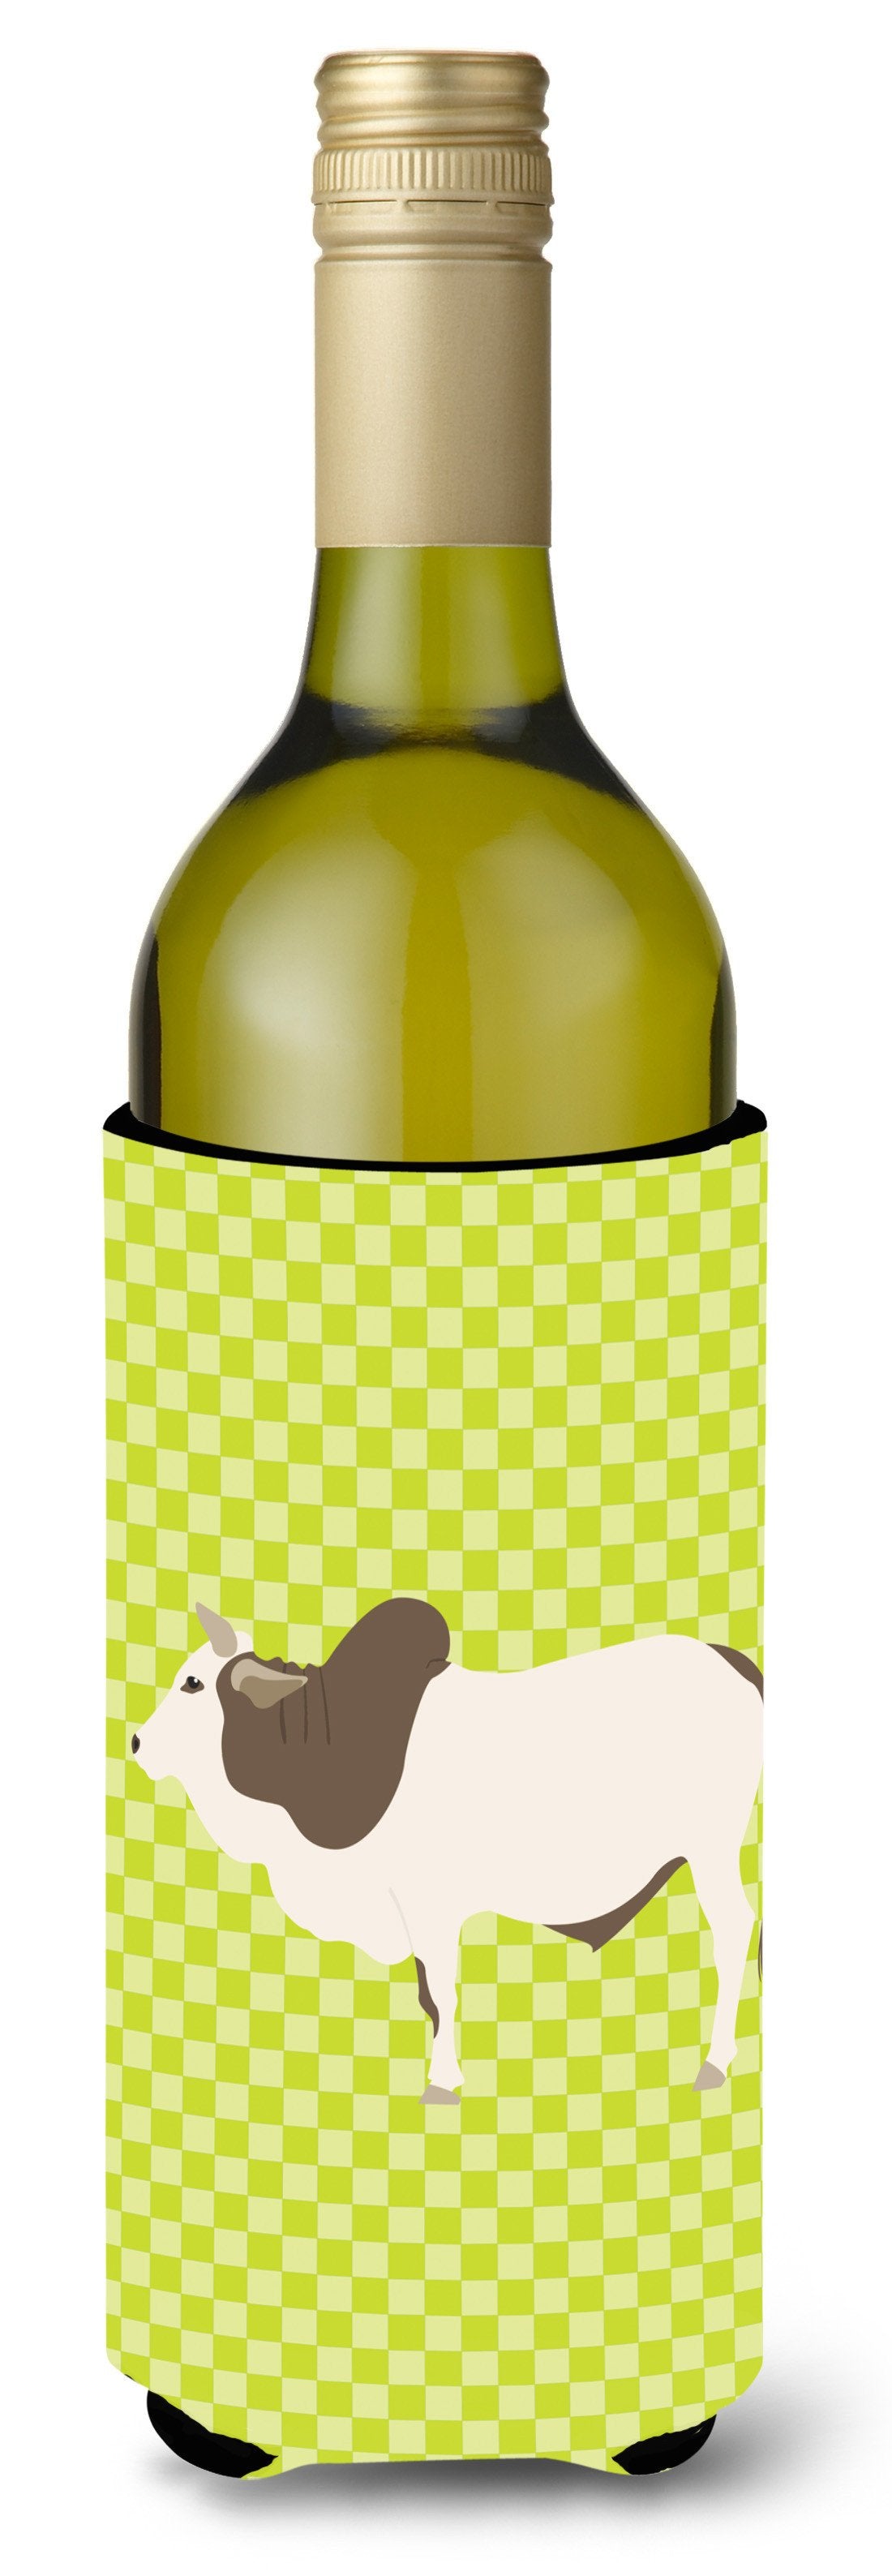 Malvi Cow Green Wine Bottle Beverge Insulator Hugger BB7656LITERK by Caroline's Treasures